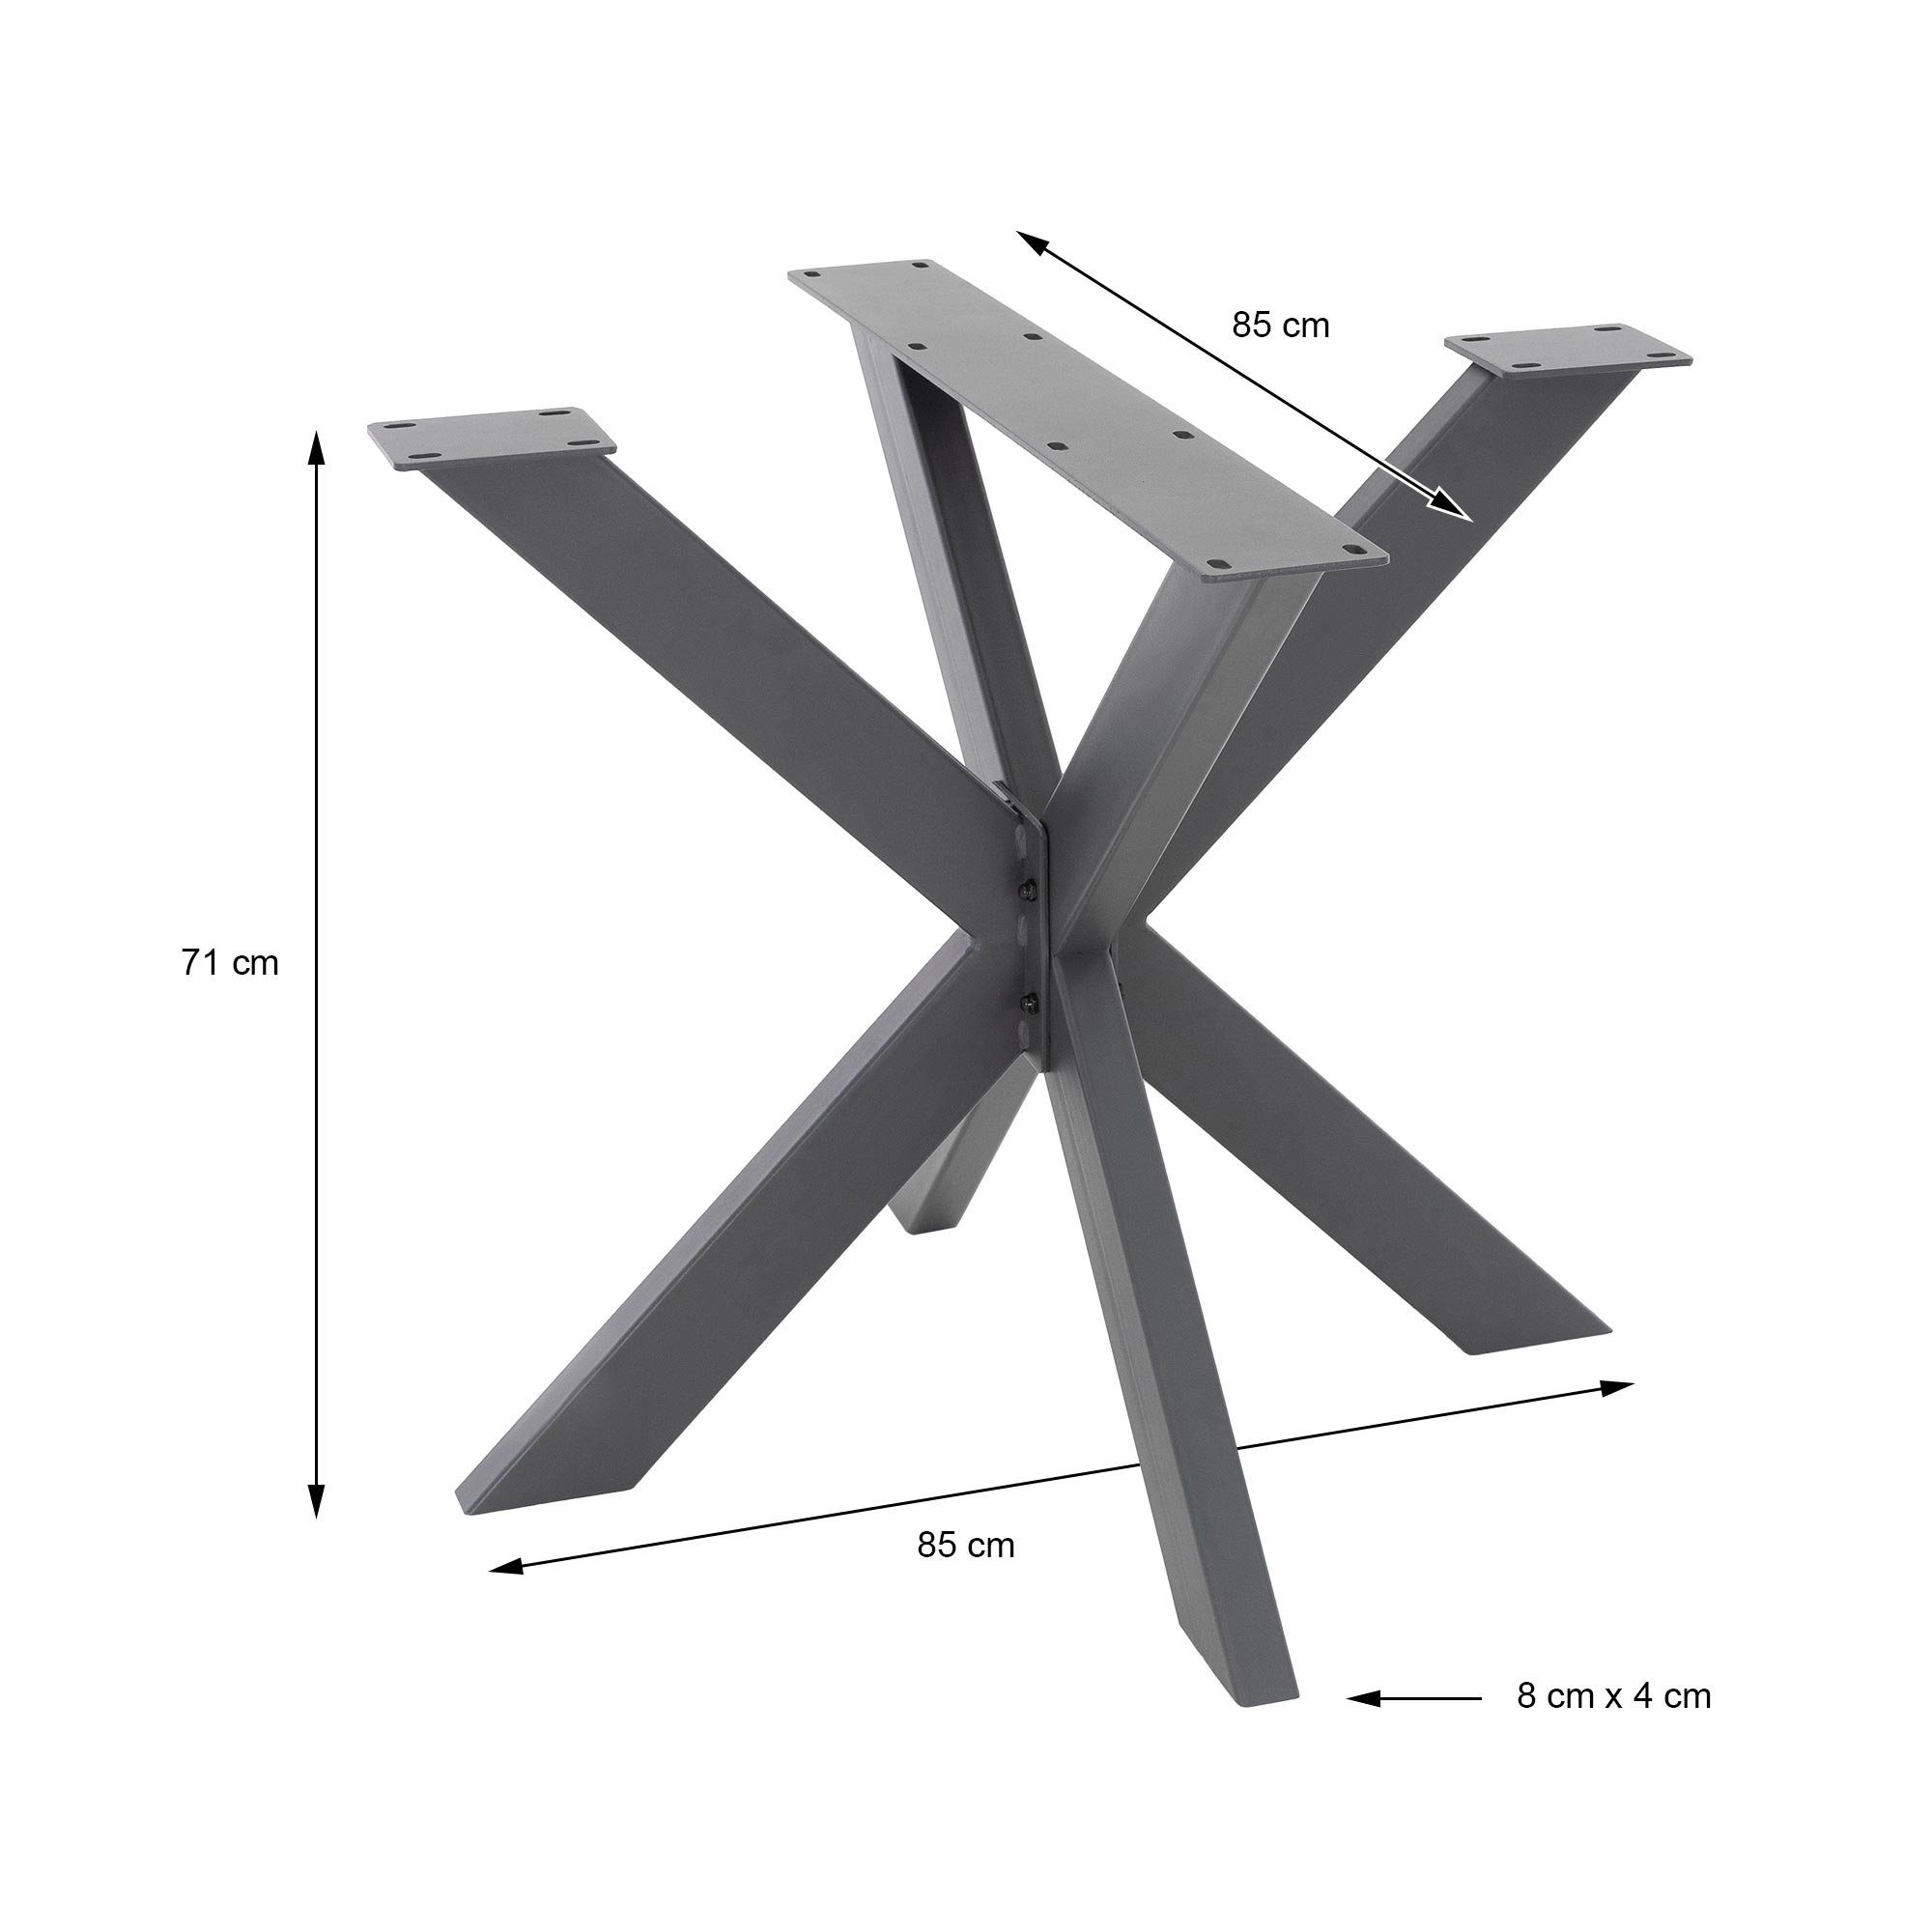 Spider ML-DESIGN Tischkufen, Montage Anthrazit Schwerlast DIY einfache Stahl Tischgestell Tischbein Tischfüße 85x71x85cm X-Design Kreuzgestell Esstisch